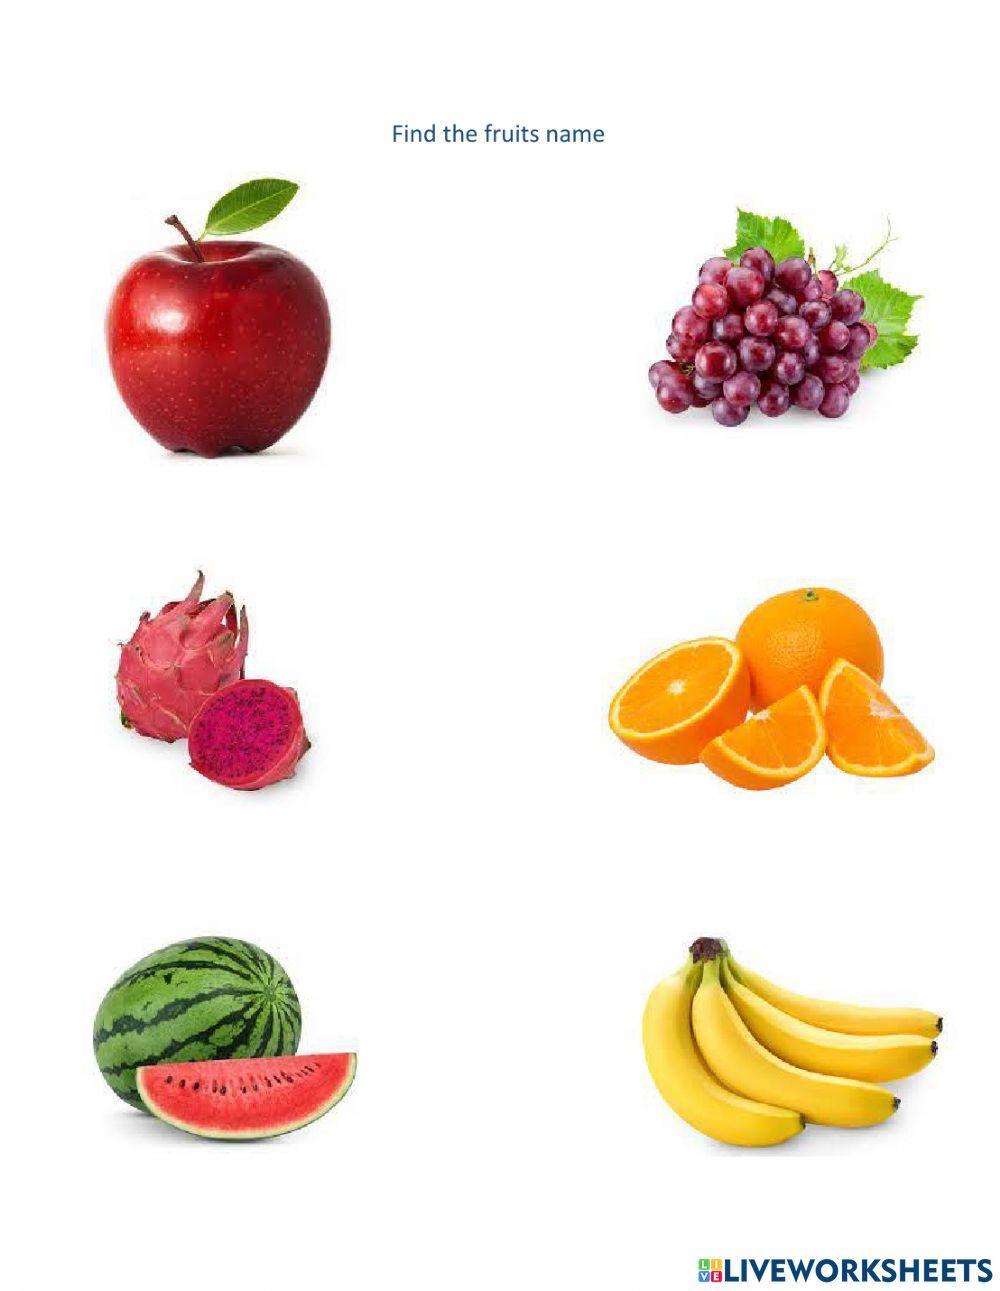 Fruits name